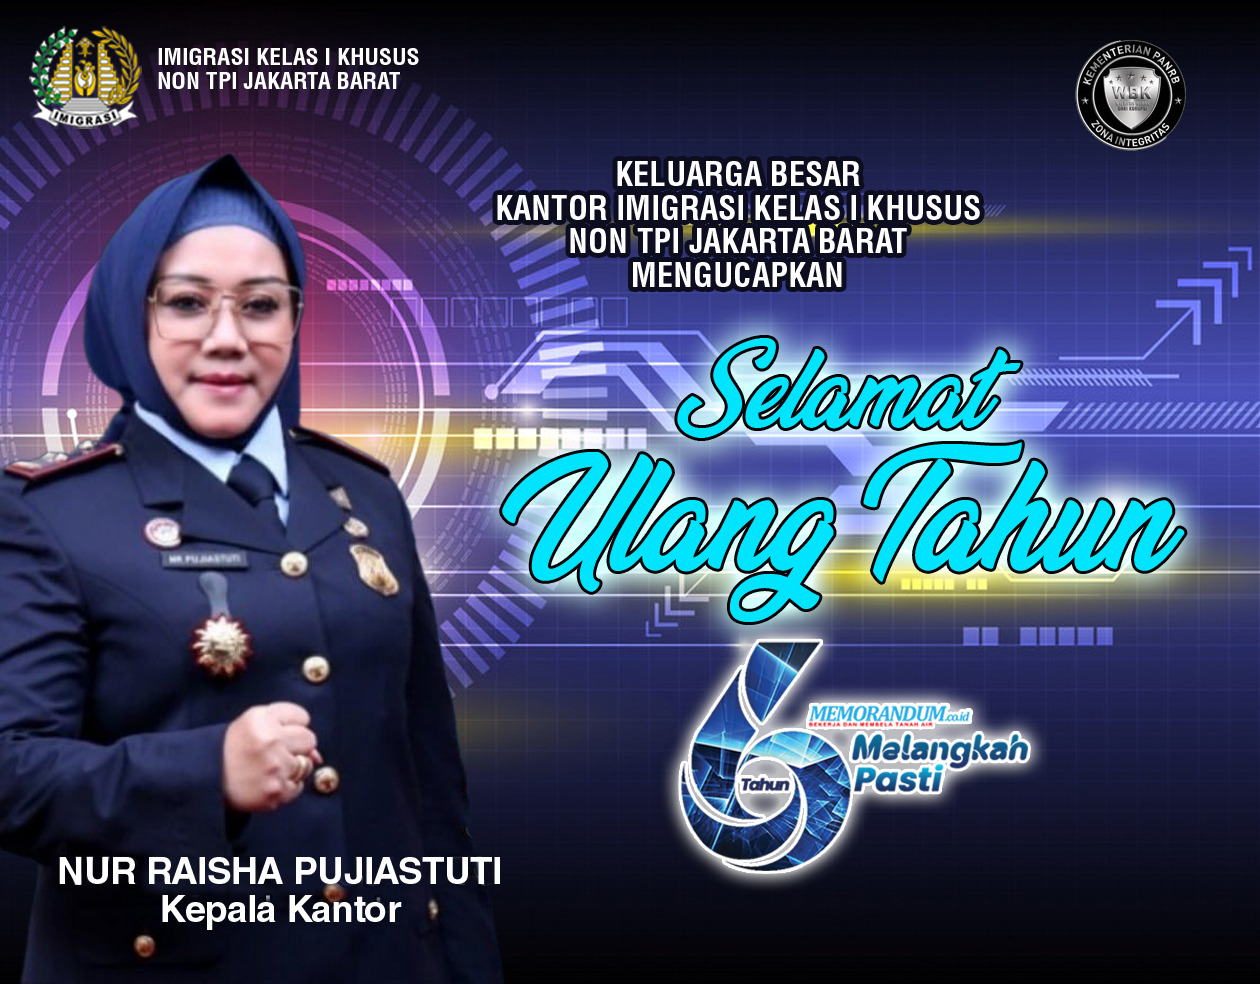 Ucapan Ultah dari Kepala Kantor Imigrasi Kelas I Khusus Non TPI Jakarta Barat Nur Raisha Pujiastuti